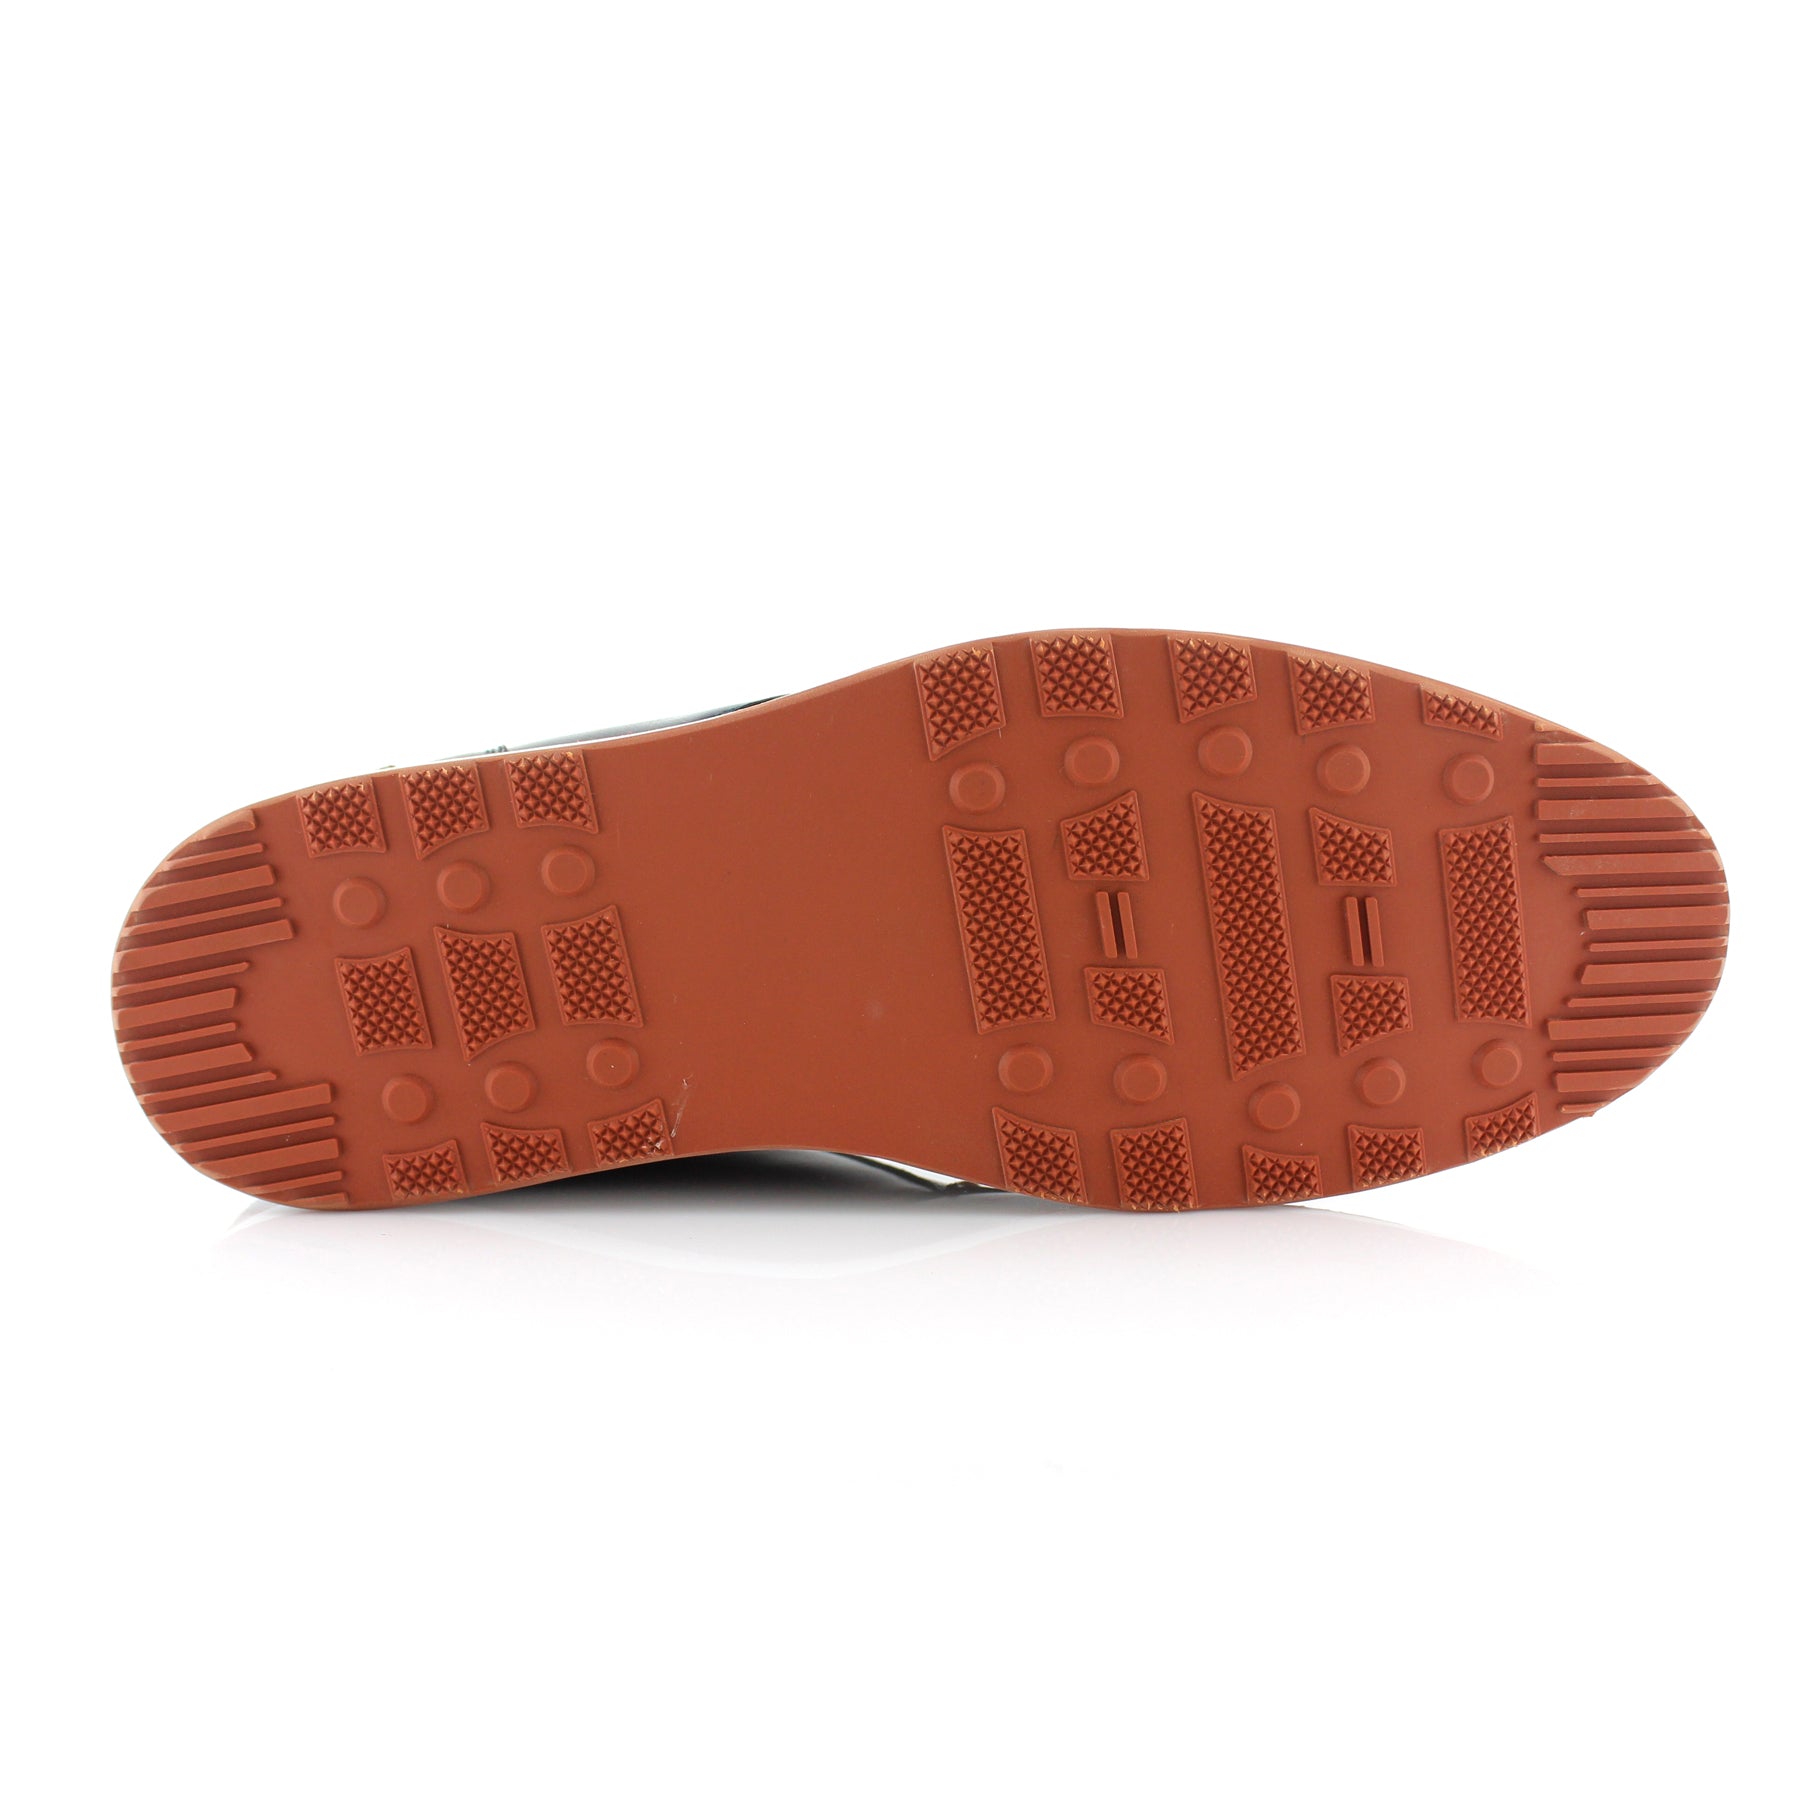 Sneaker Chukka Boots | Houstan by Ferro Aldo | Conal Footwear | Bottom Sole Angle View